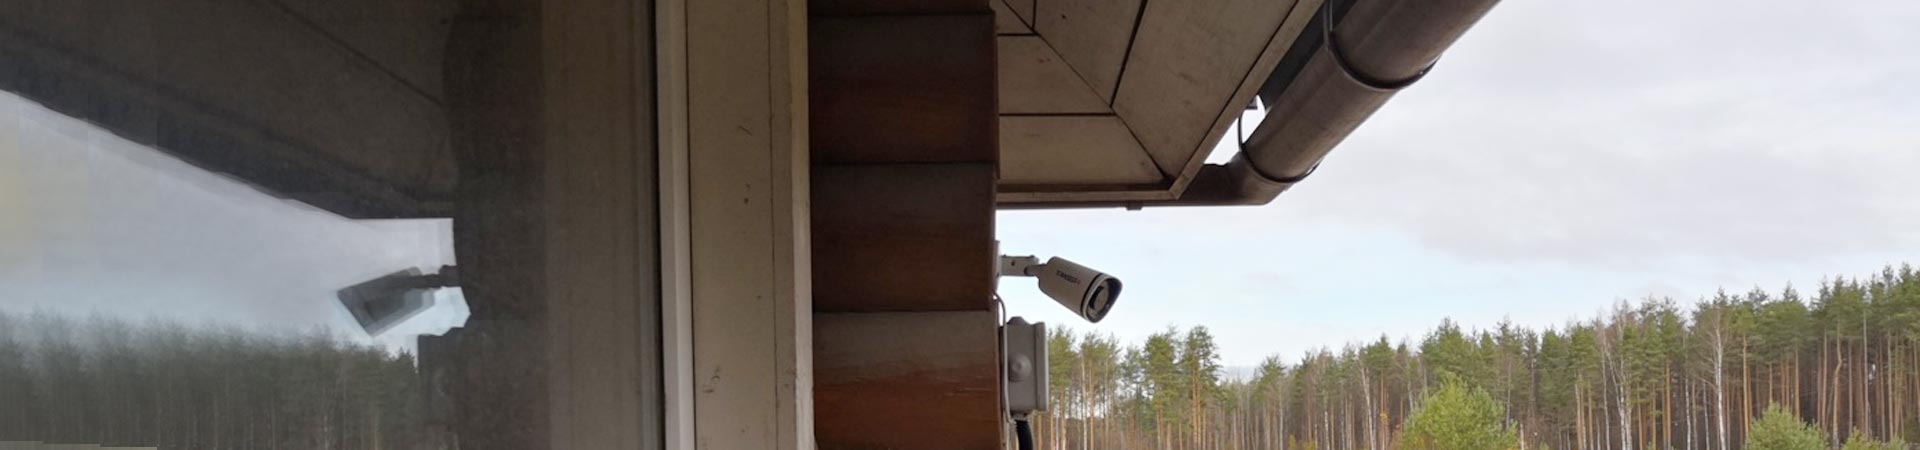 Установка видеонаблюдения на даче